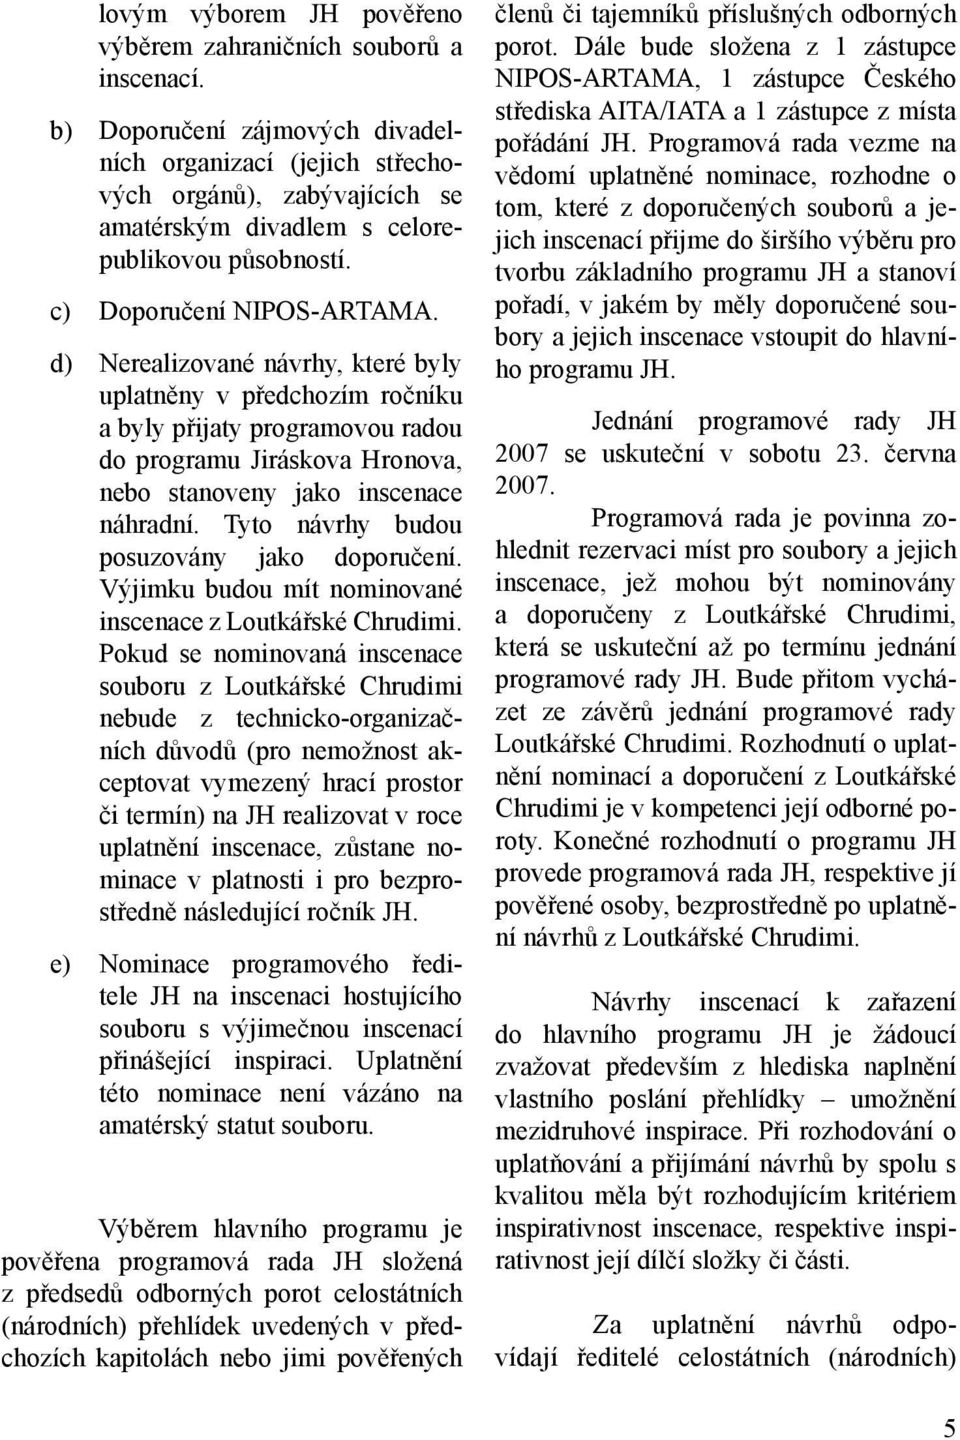 d) Nerealizované návrhy, které byly uplatněny v předchozím ročníku a byly přijaty programovou radou do programu Jiráskova Hronova, nebo stanoveny jako inscenace náhradní.